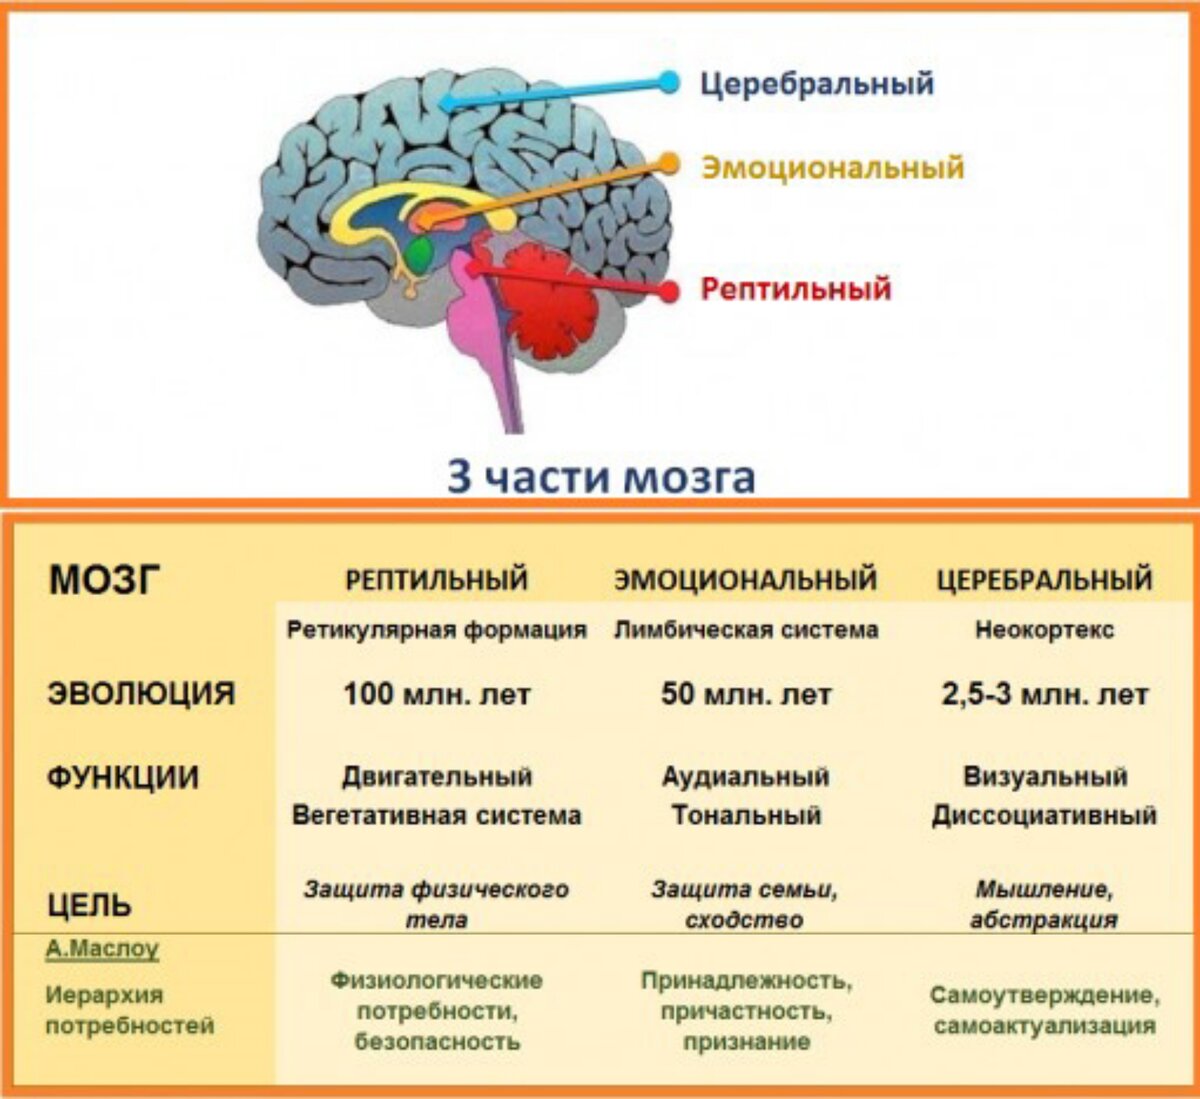 Рептильный мозг и лимбическая система. Отделы мозга рептильный мозг. Рептильный мозг и неокортекс. Строение мозга неокортекс. Древние отделы мозга человека